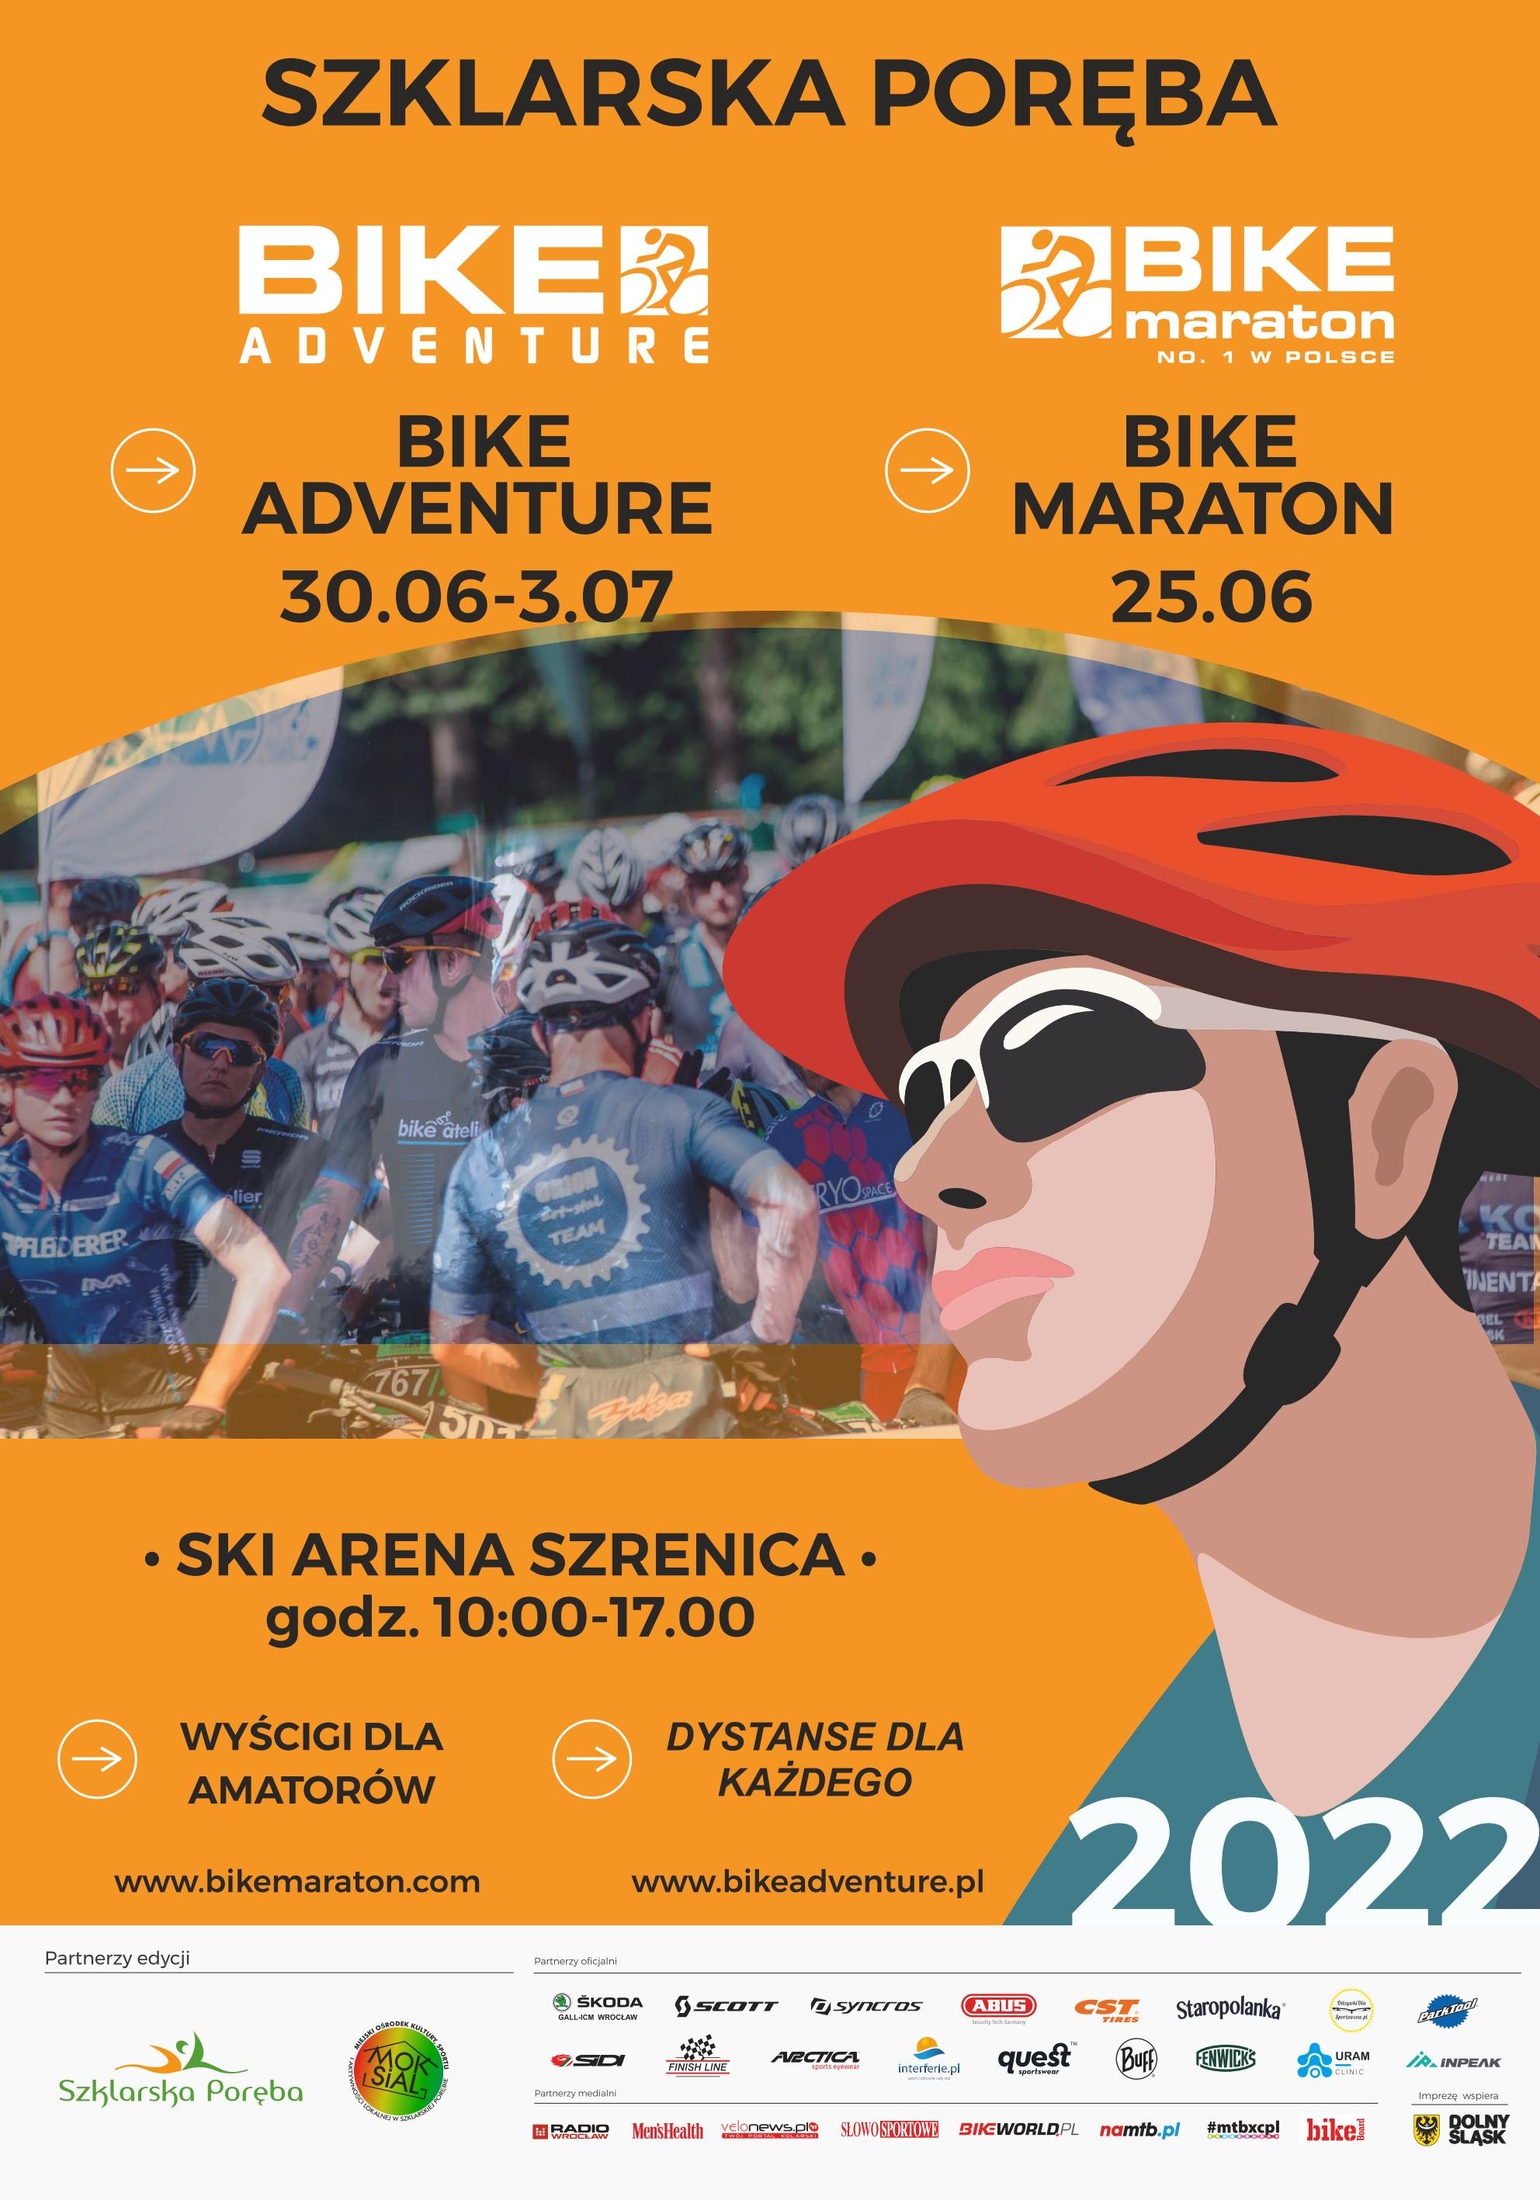 Bike Maraton i Bike Adventure - największe i najlepsze zawody rowerowe w Szklarskiej Porębie